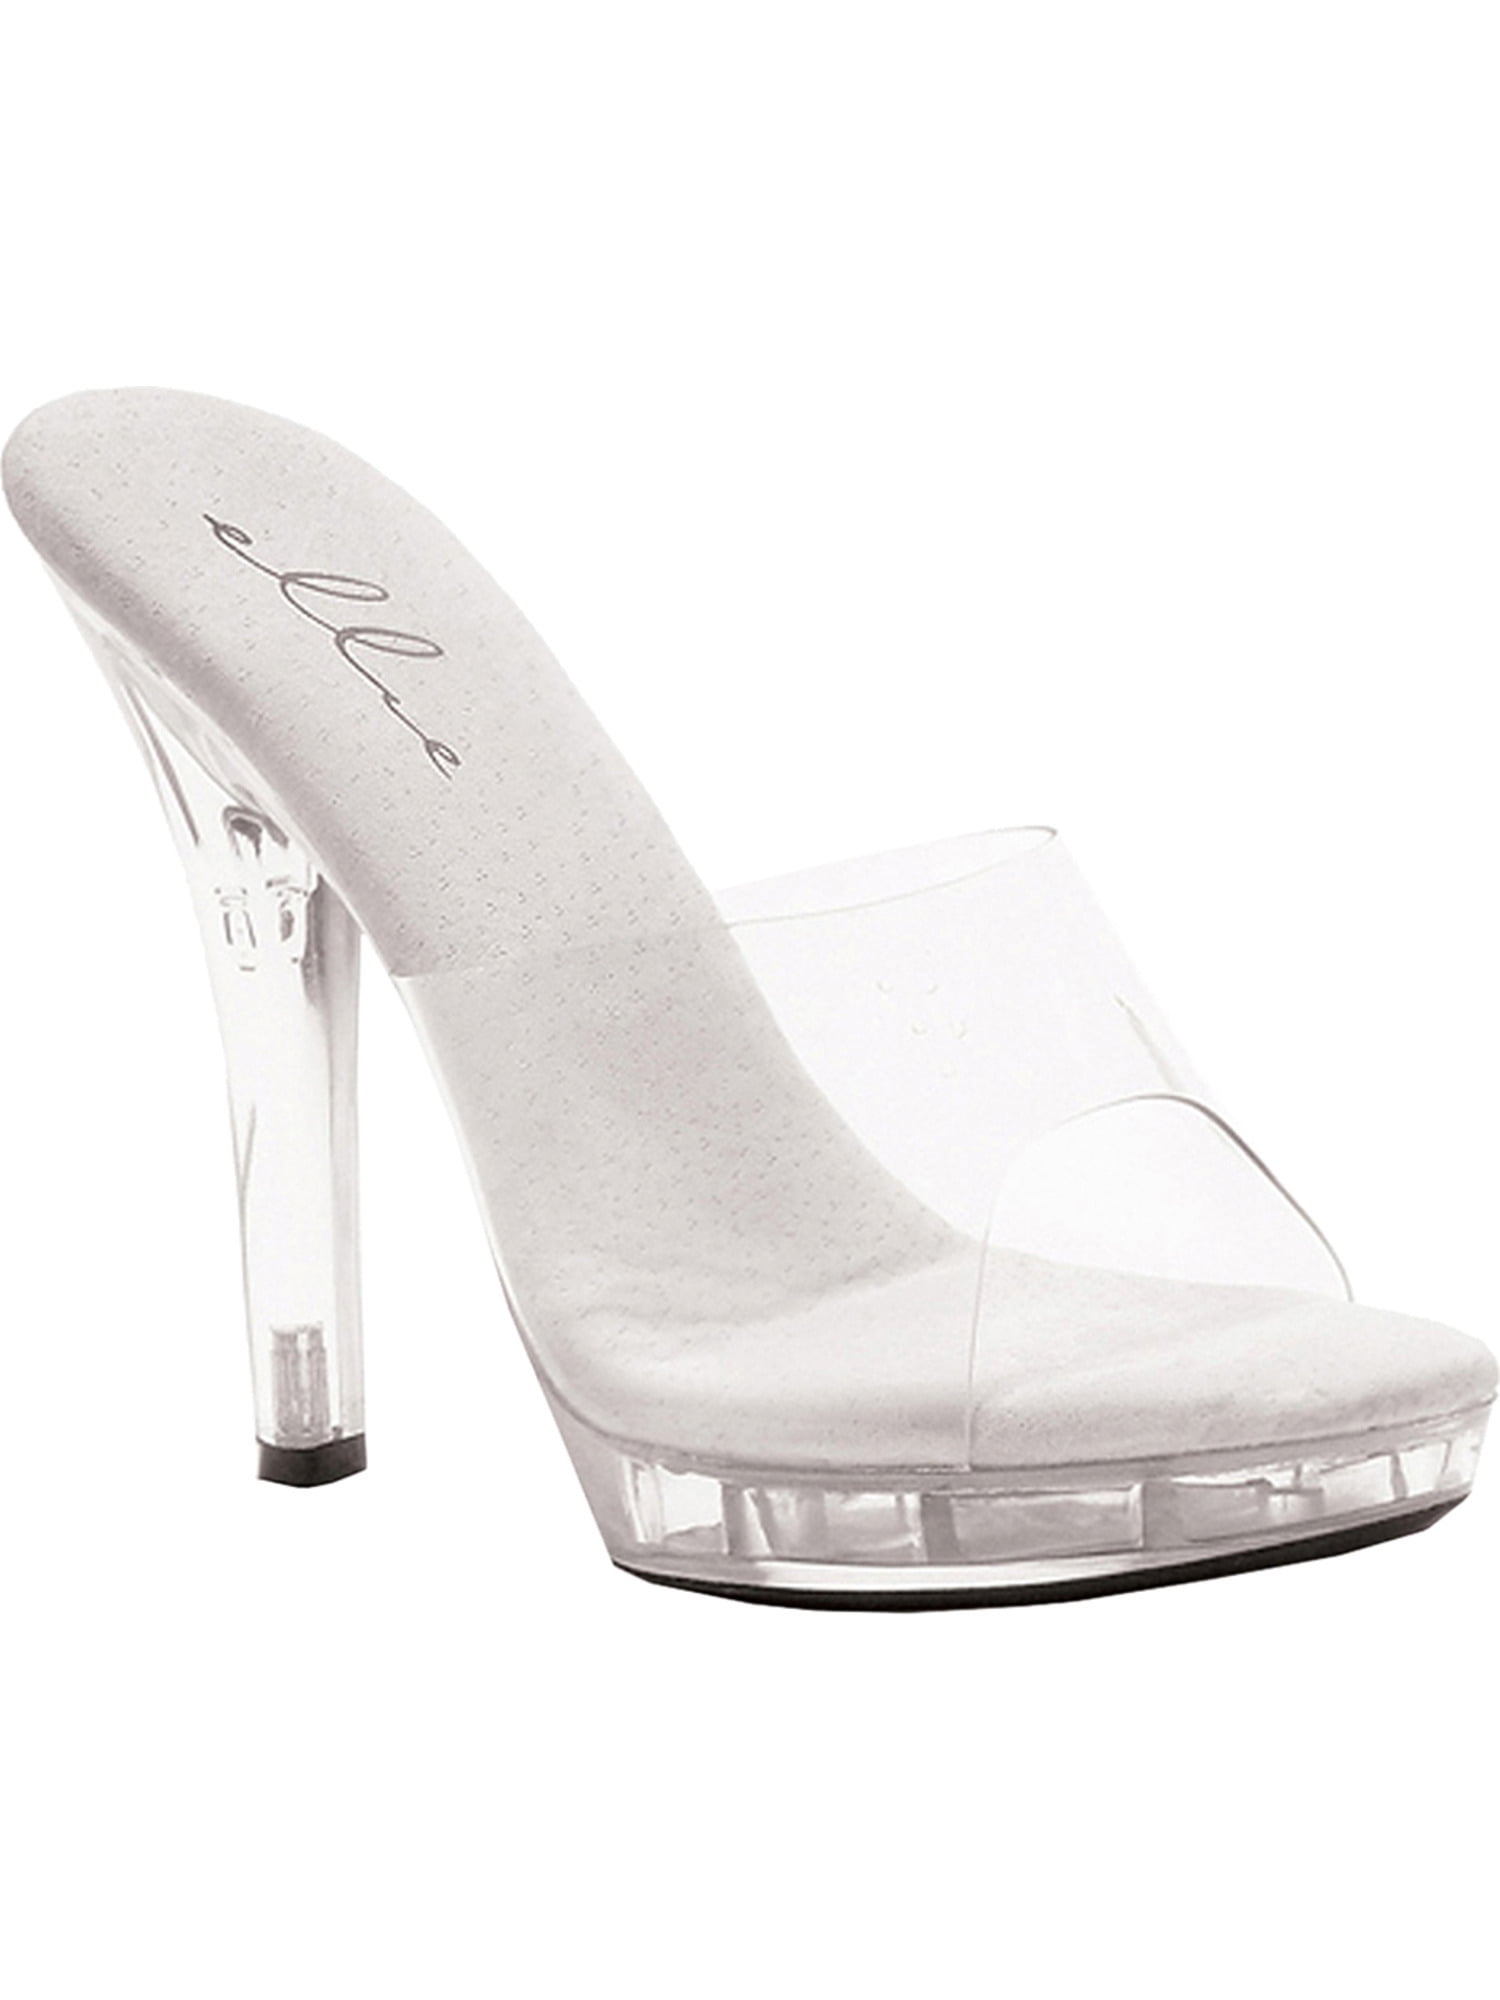 women's slide on dress shoes